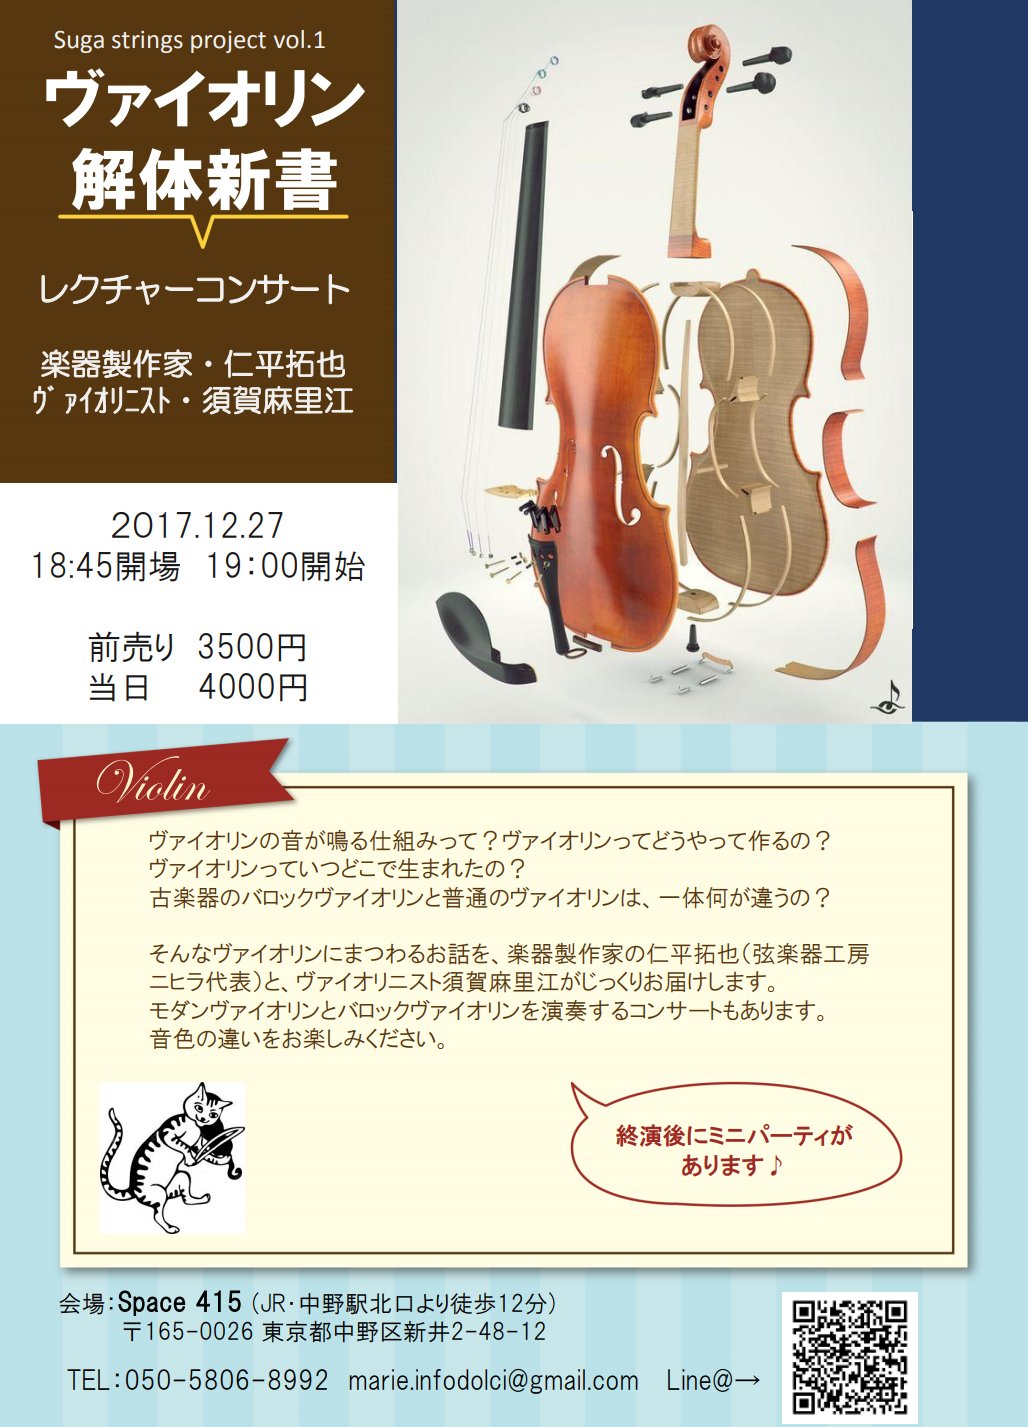 須賀 麻里江 今日です お席 数席空き出ました よかったら ヴァイオリン解体新書 17 12 27 19 00 楽器職人の仁平さんとのレクチャーコンサートです 中世フィドル バロックヴァイオリン 古典派の頃のヴァイオリン モダンヴァイオリンの四台弾き